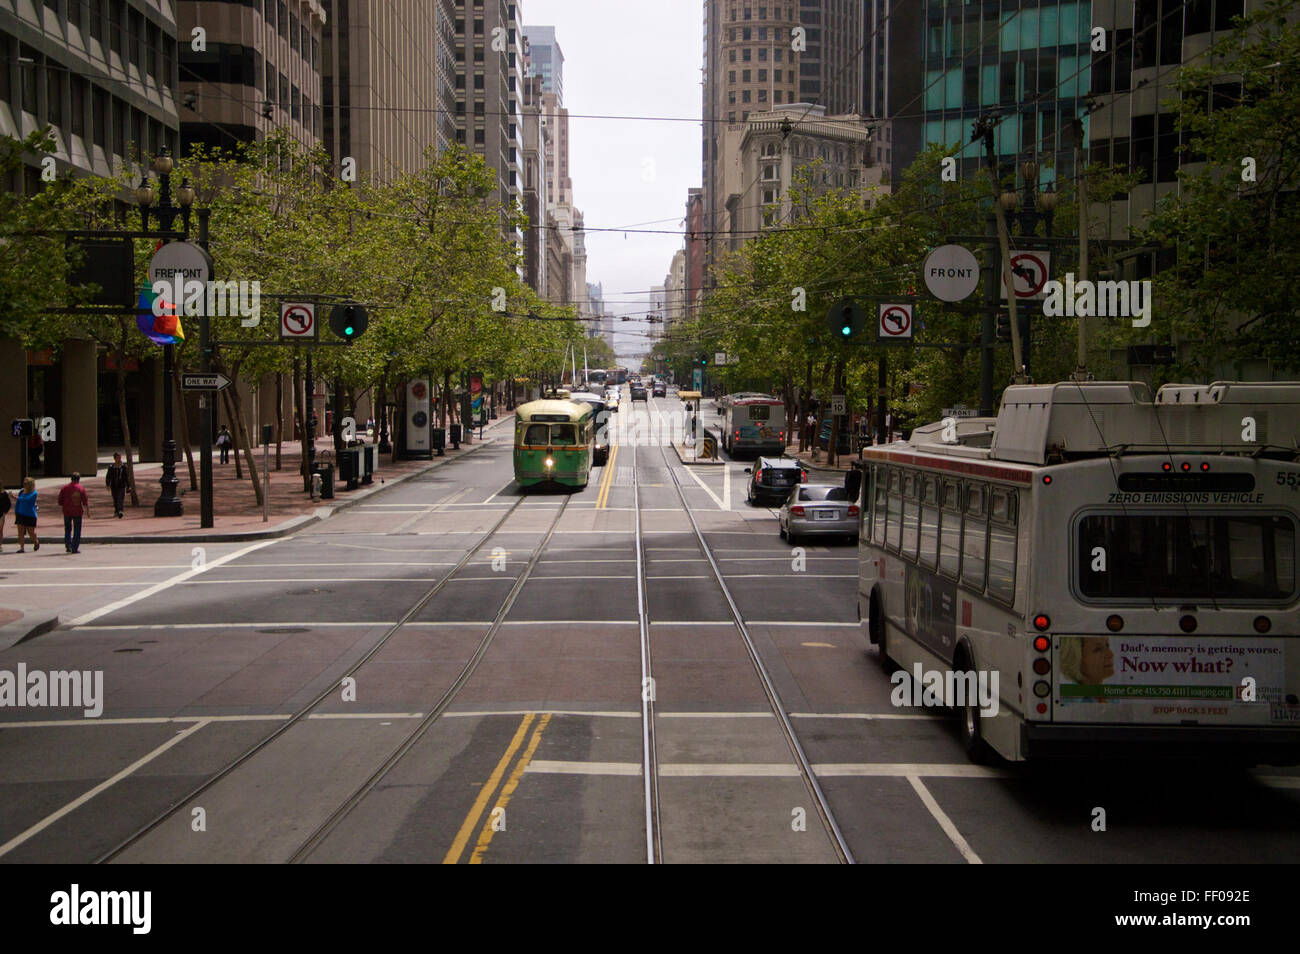 Tram on Urban Street Tram on Urban Street Stock Photo